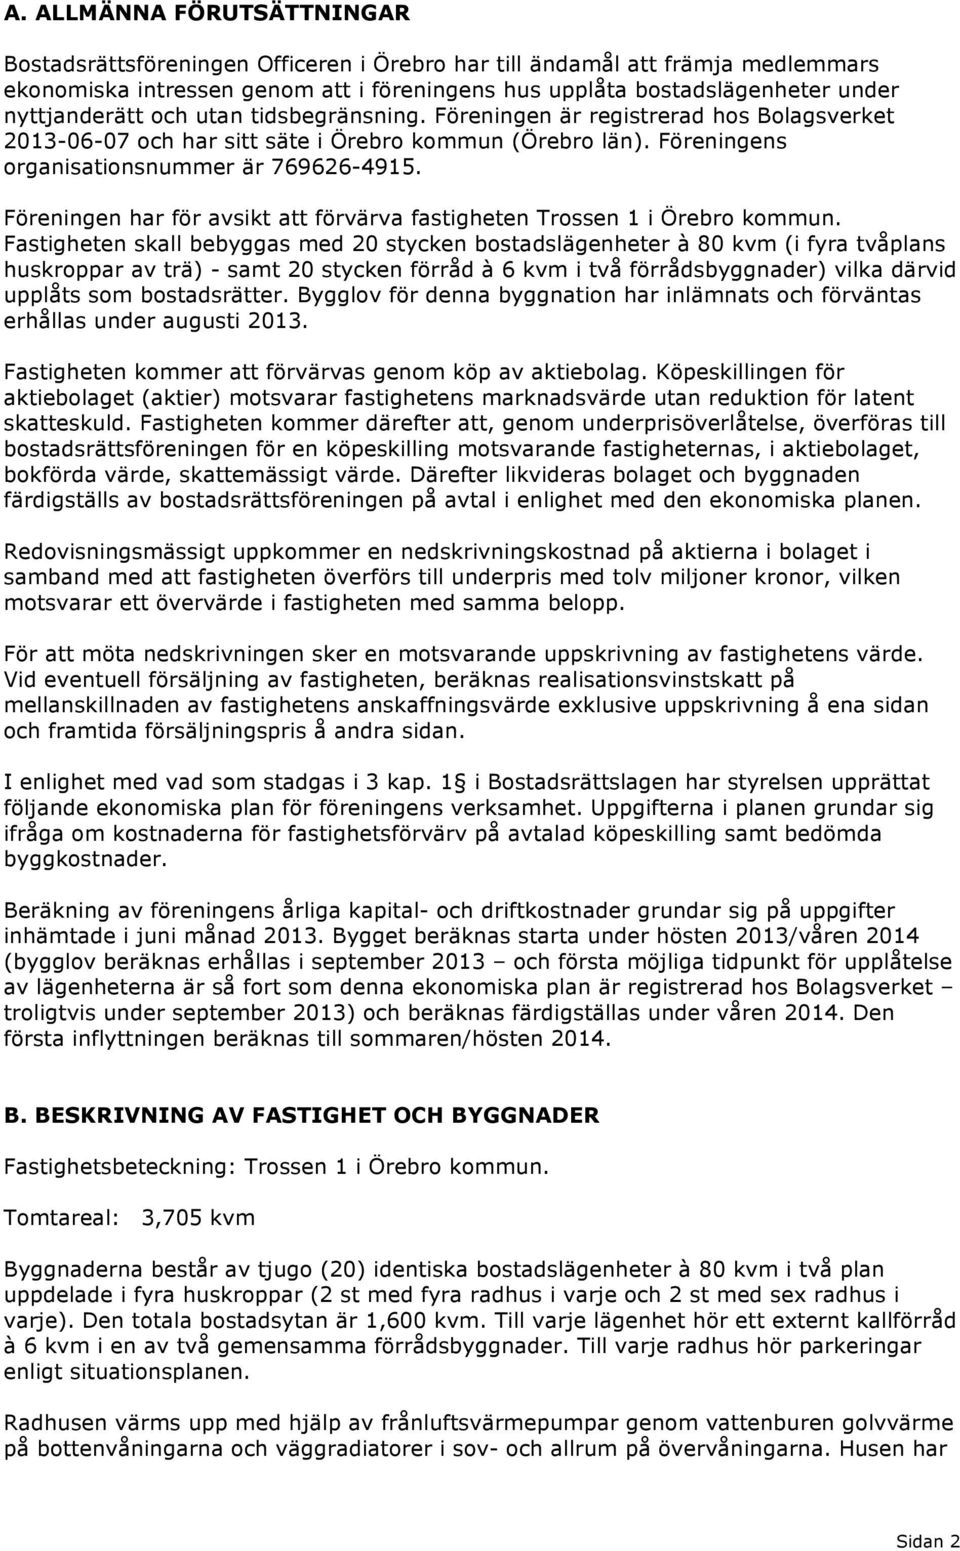 Föreningen har för avsikt att förvärva fastigheten Trossen 1 i Örebro kommun.